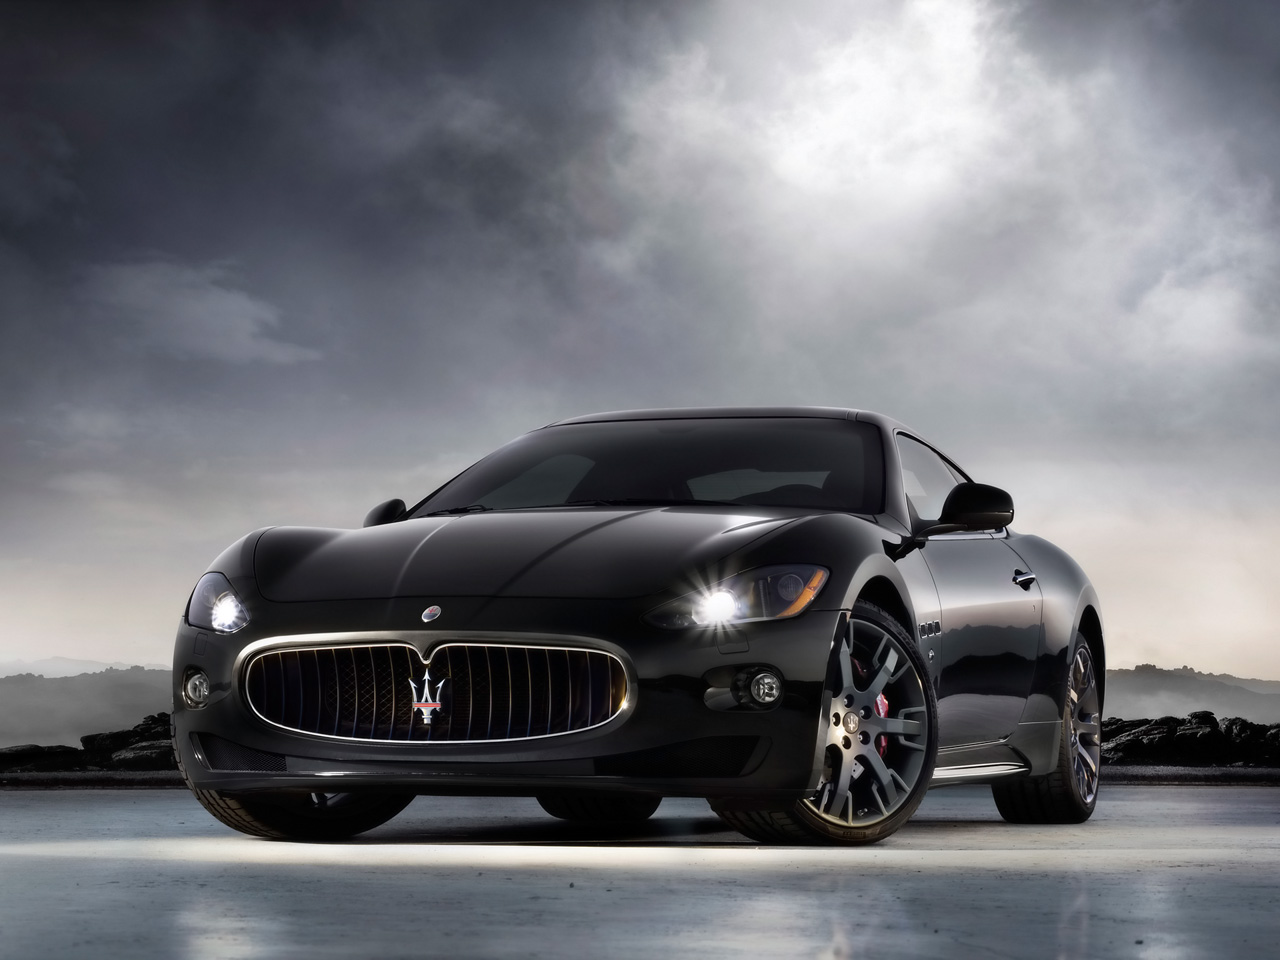 Maserati+granturismo+convertible+white